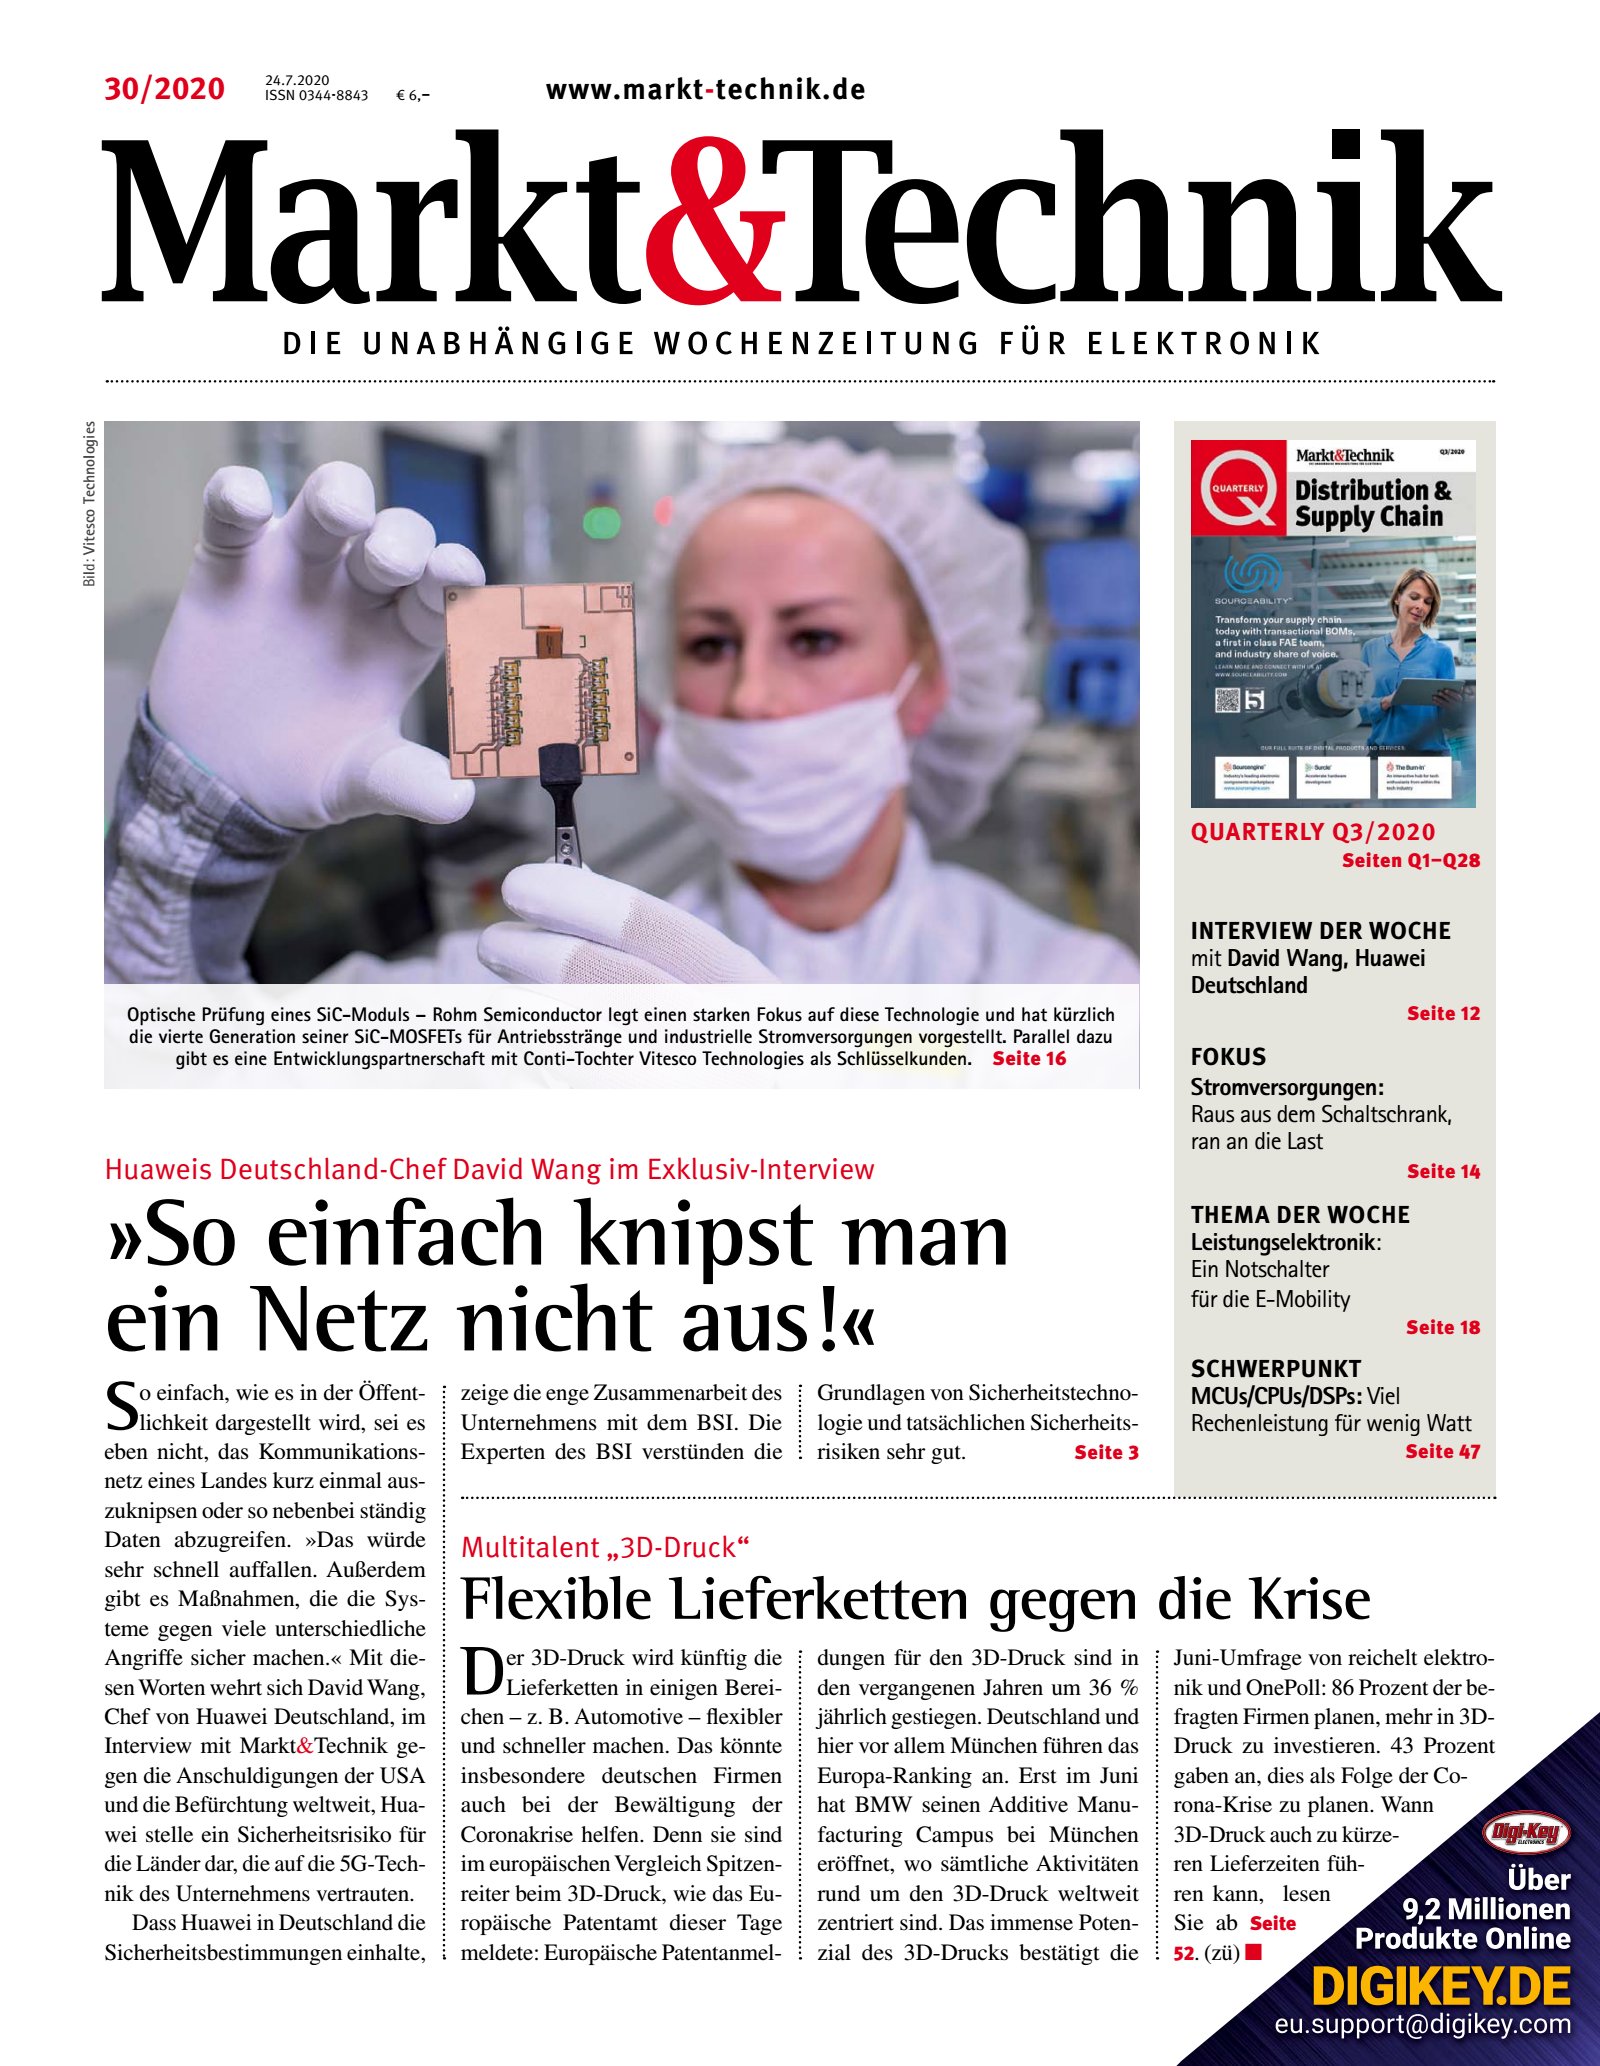 Markt&Technik 30/2020 Digital